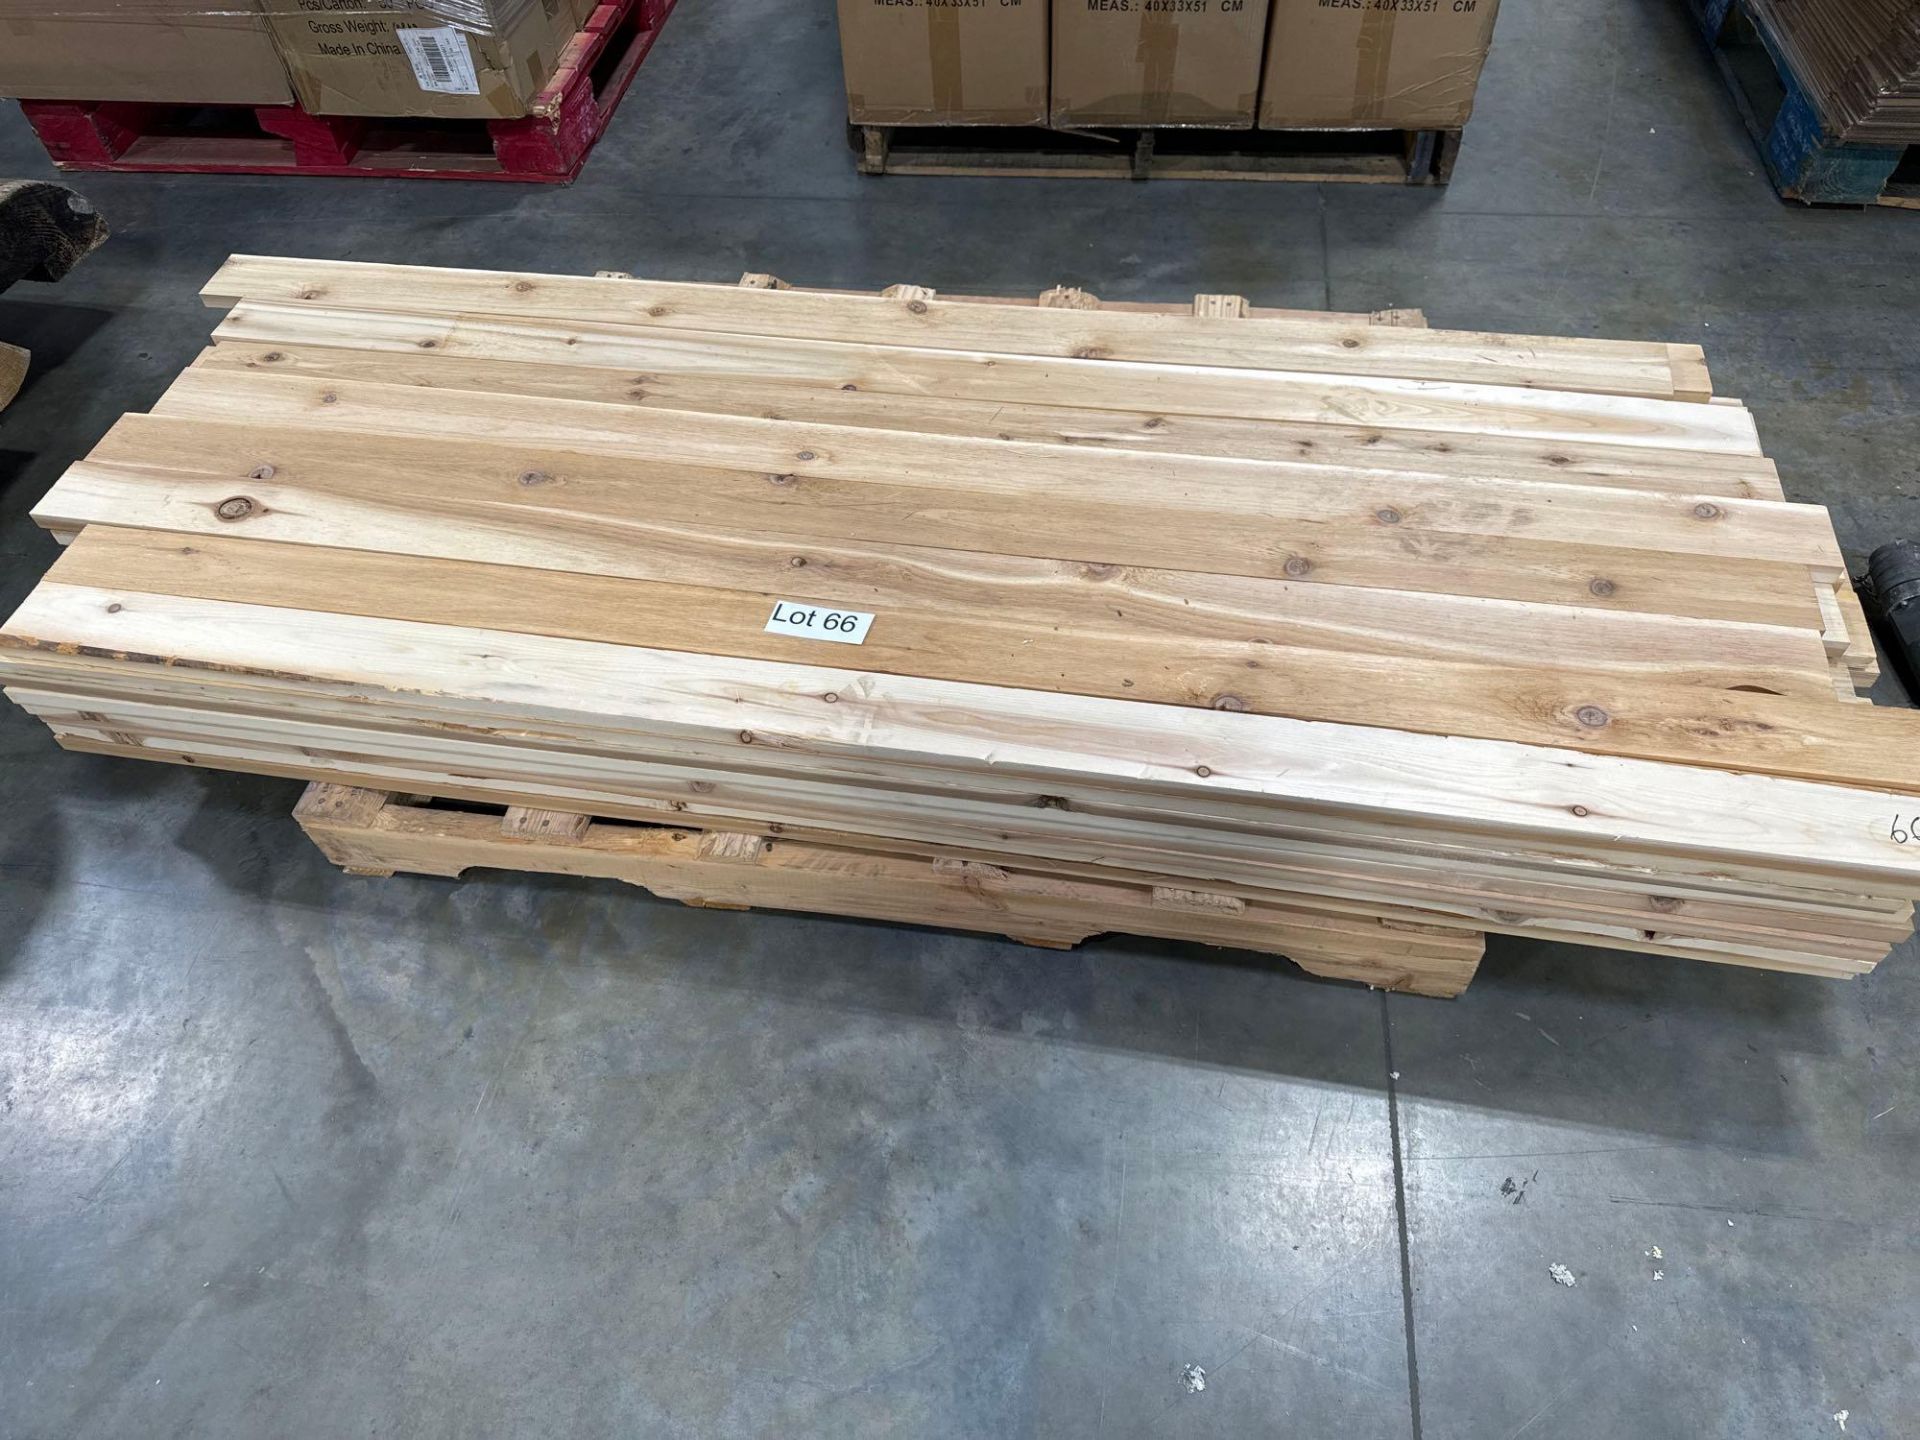 1x4 Cedar planks